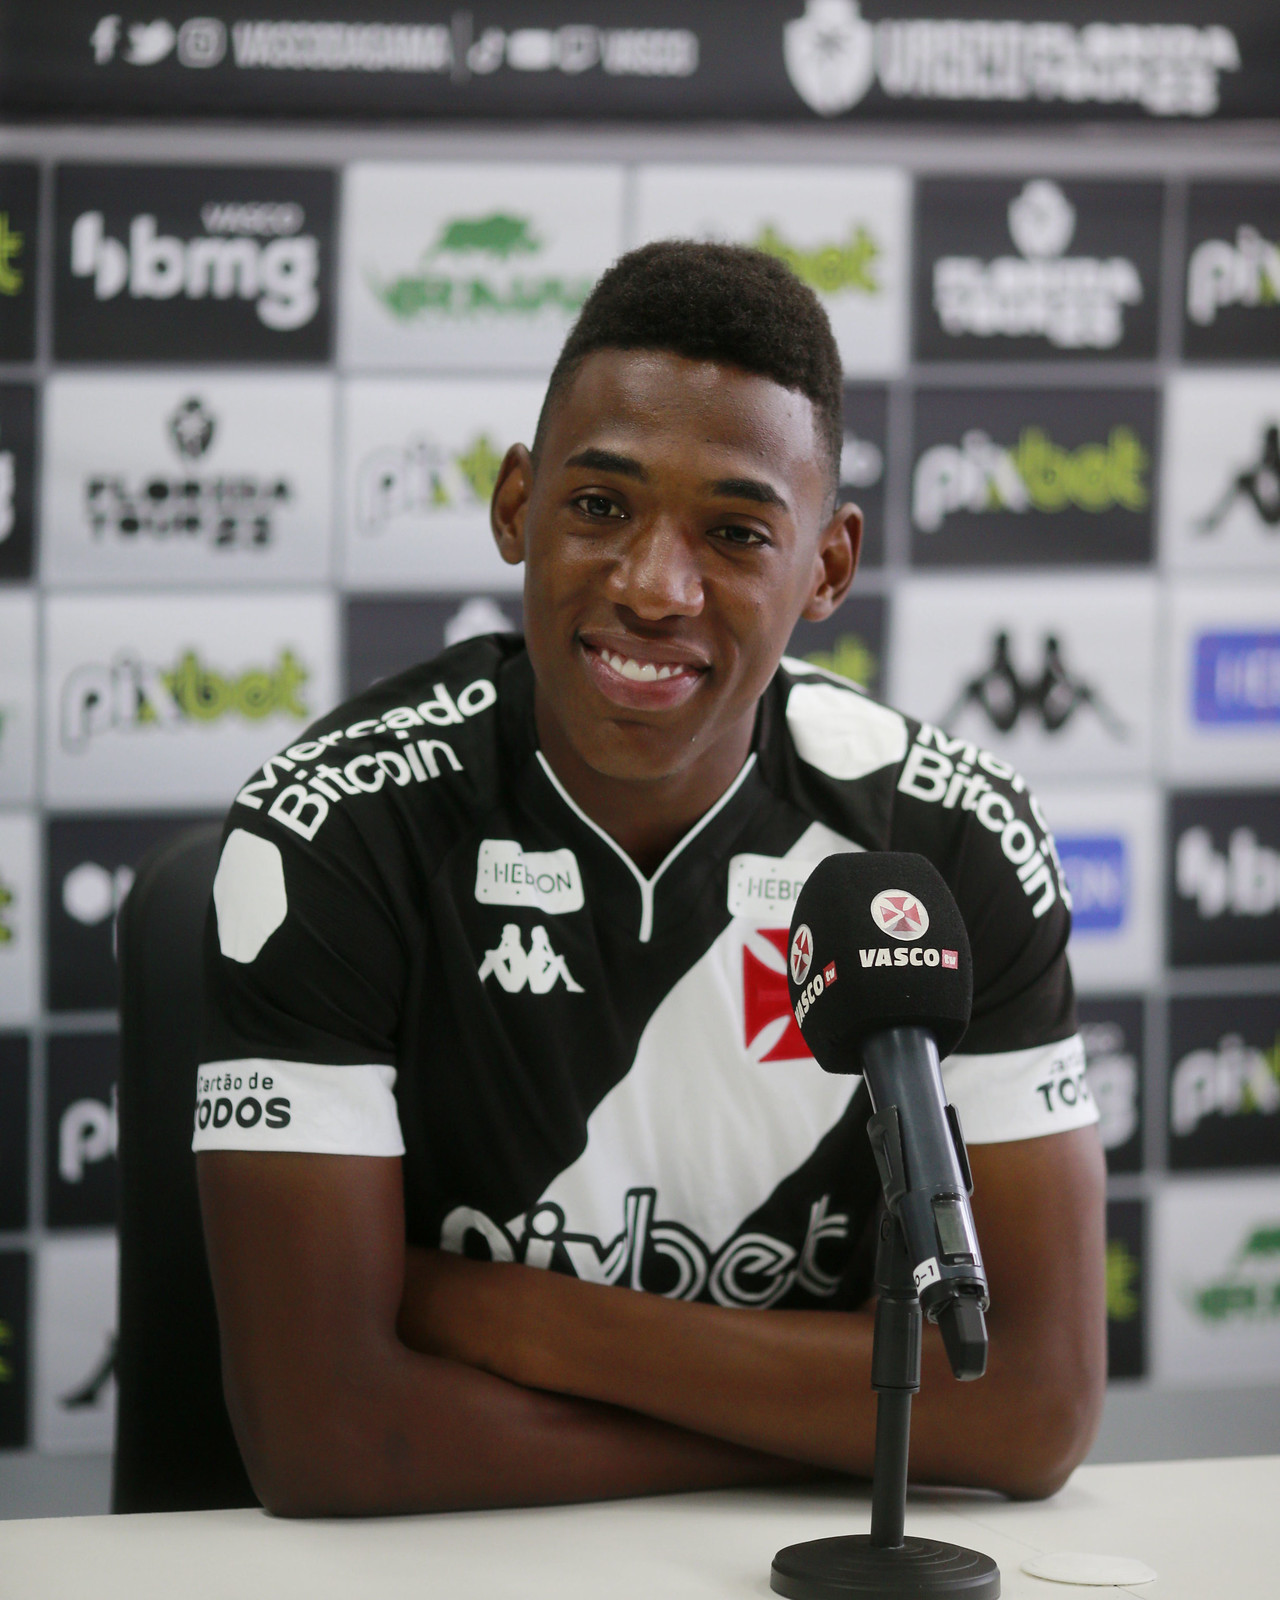 Léo é apresentado e revela felicidade em jogar no Vasco: “Estou muito contente, dá para ver no meu rosto”